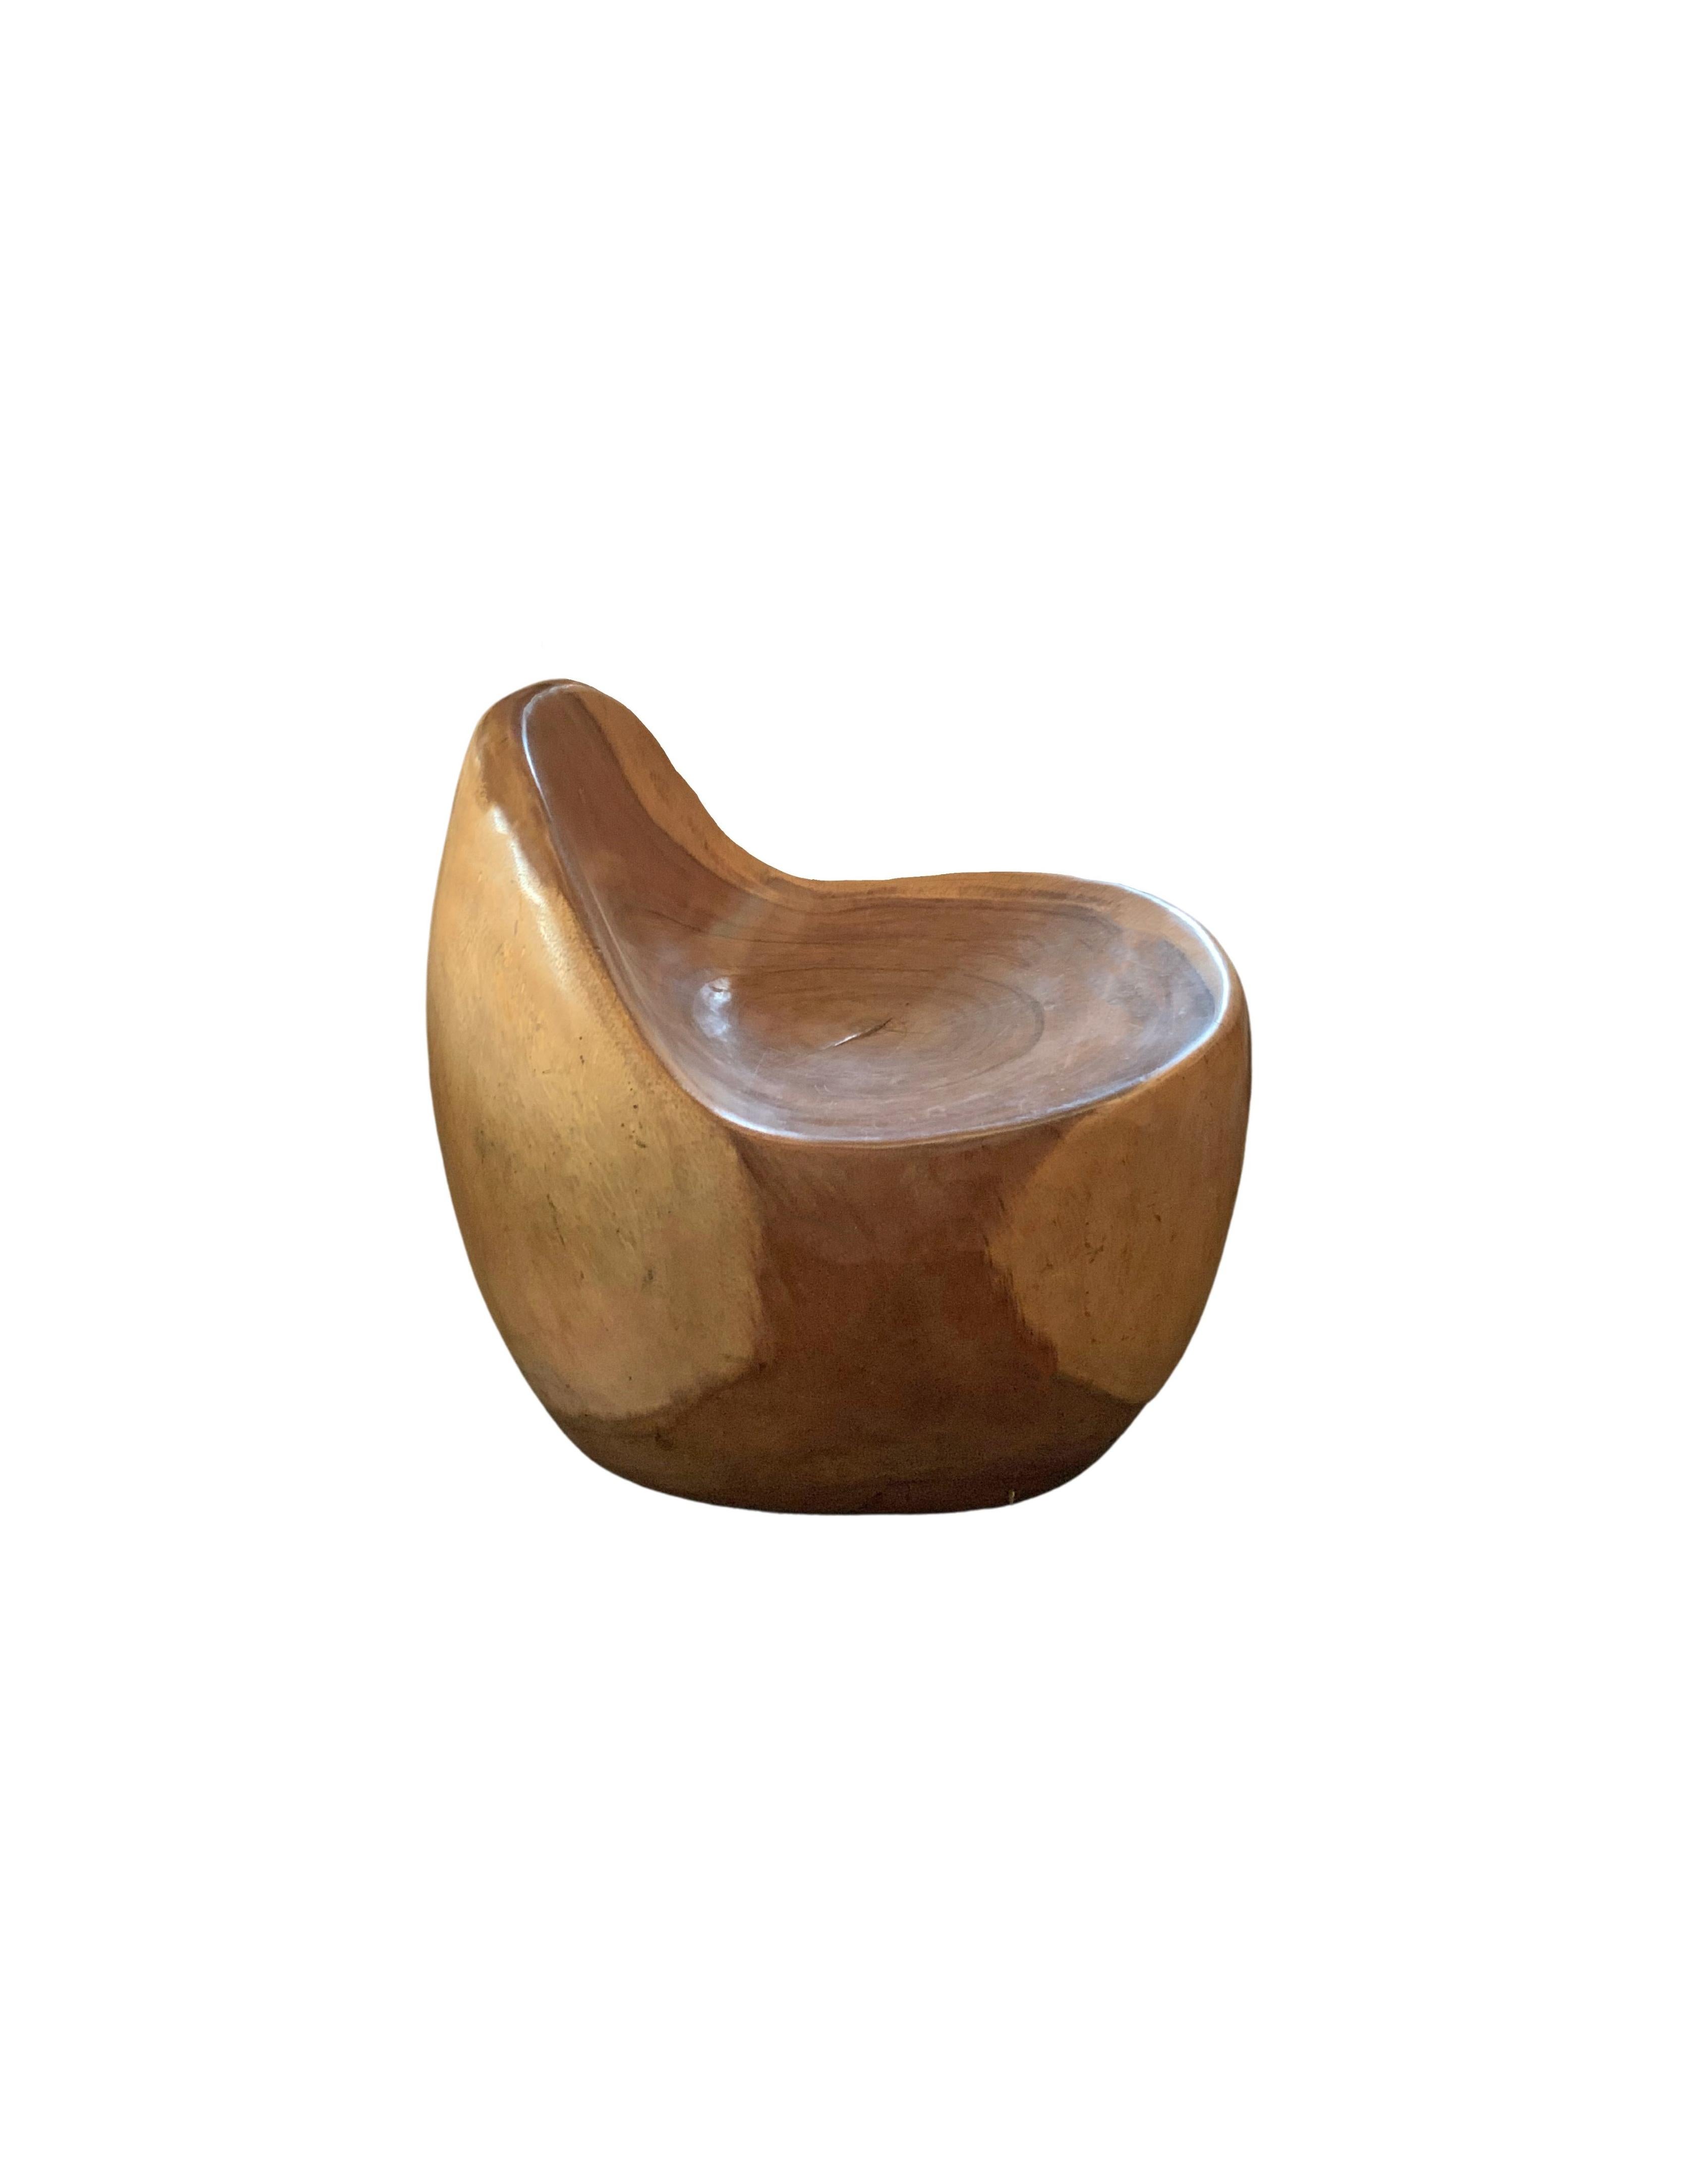 Ein wundervoll skulpturaler Stuhl, der an ein Ei erinnert, mit einer perfekt geformten Sitzfläche und Rückenlehne, die sowohl Komfort als auch Eleganz bietet. Mit seiner neutralen Pigmentierung und der dezenten Holzstruktur passt er perfekt in jeden